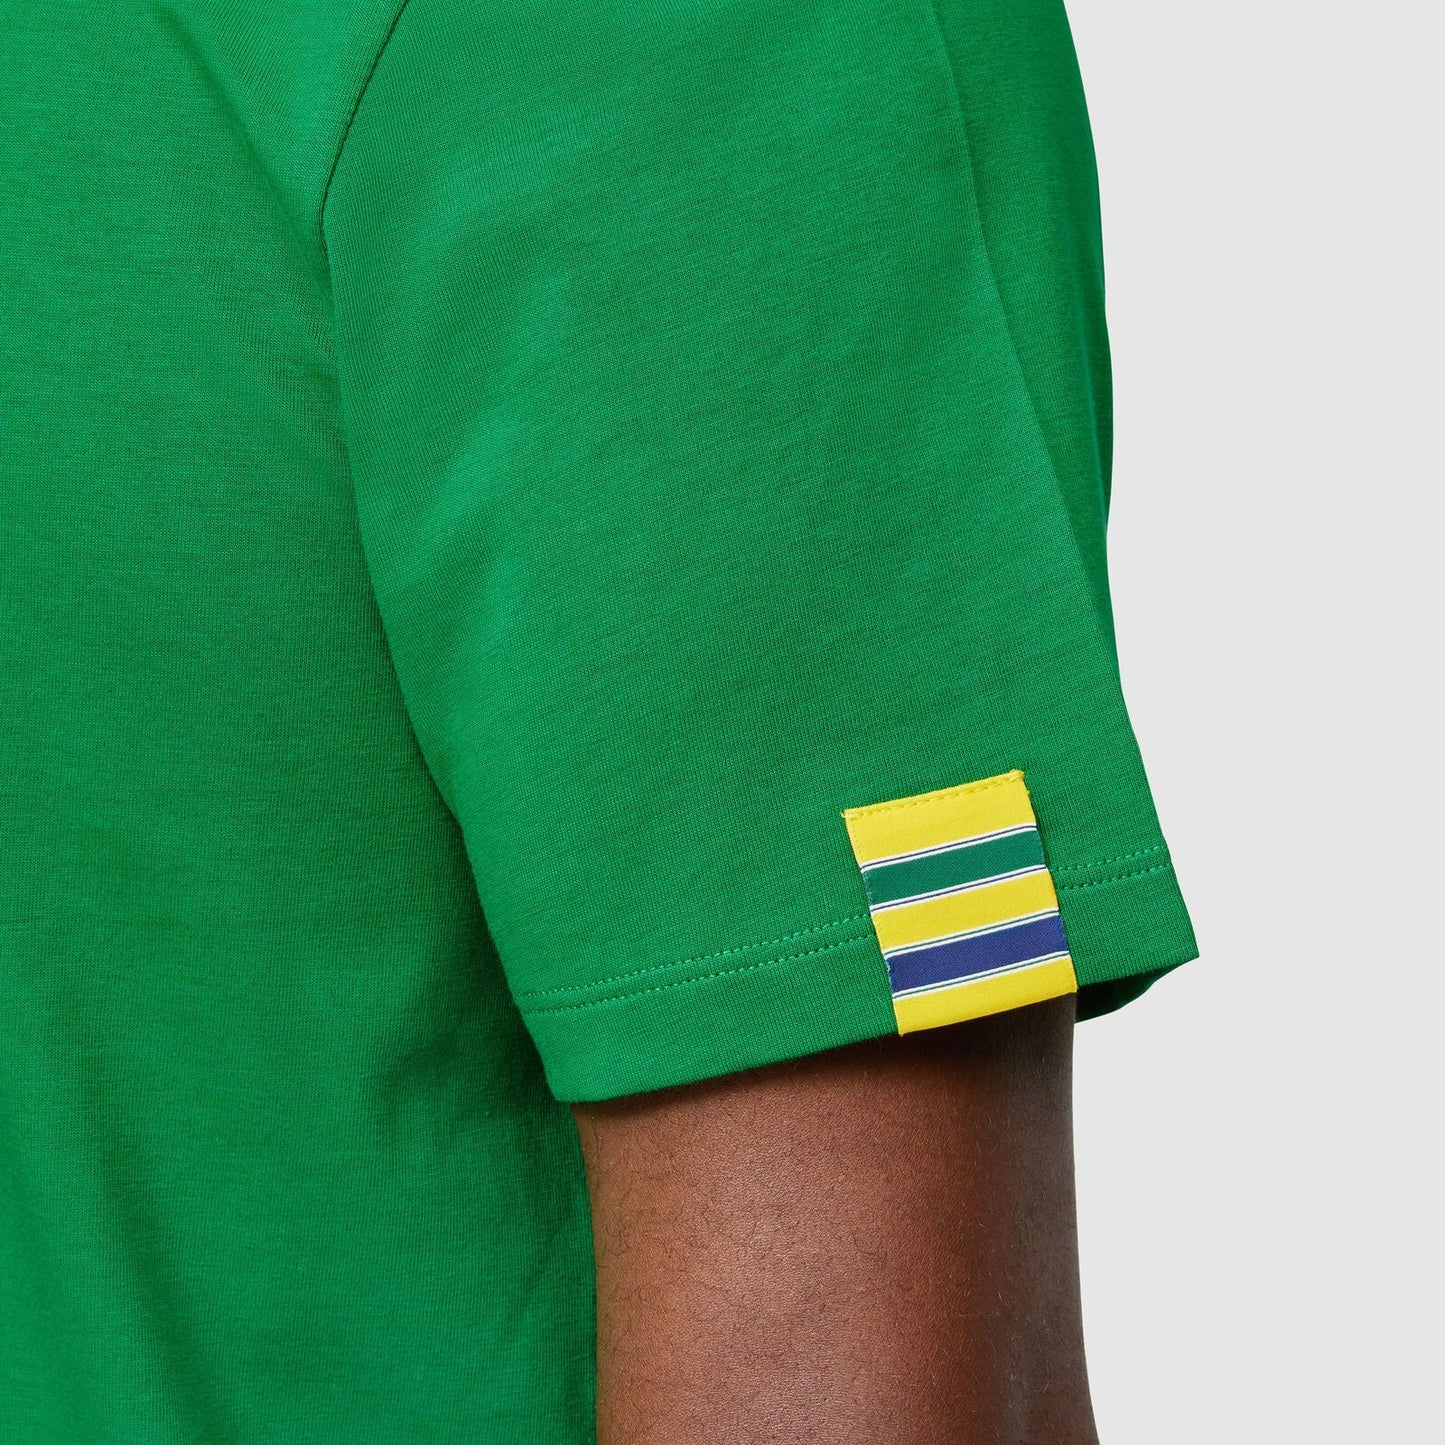 Ayrton Senna Logo T-Shirt